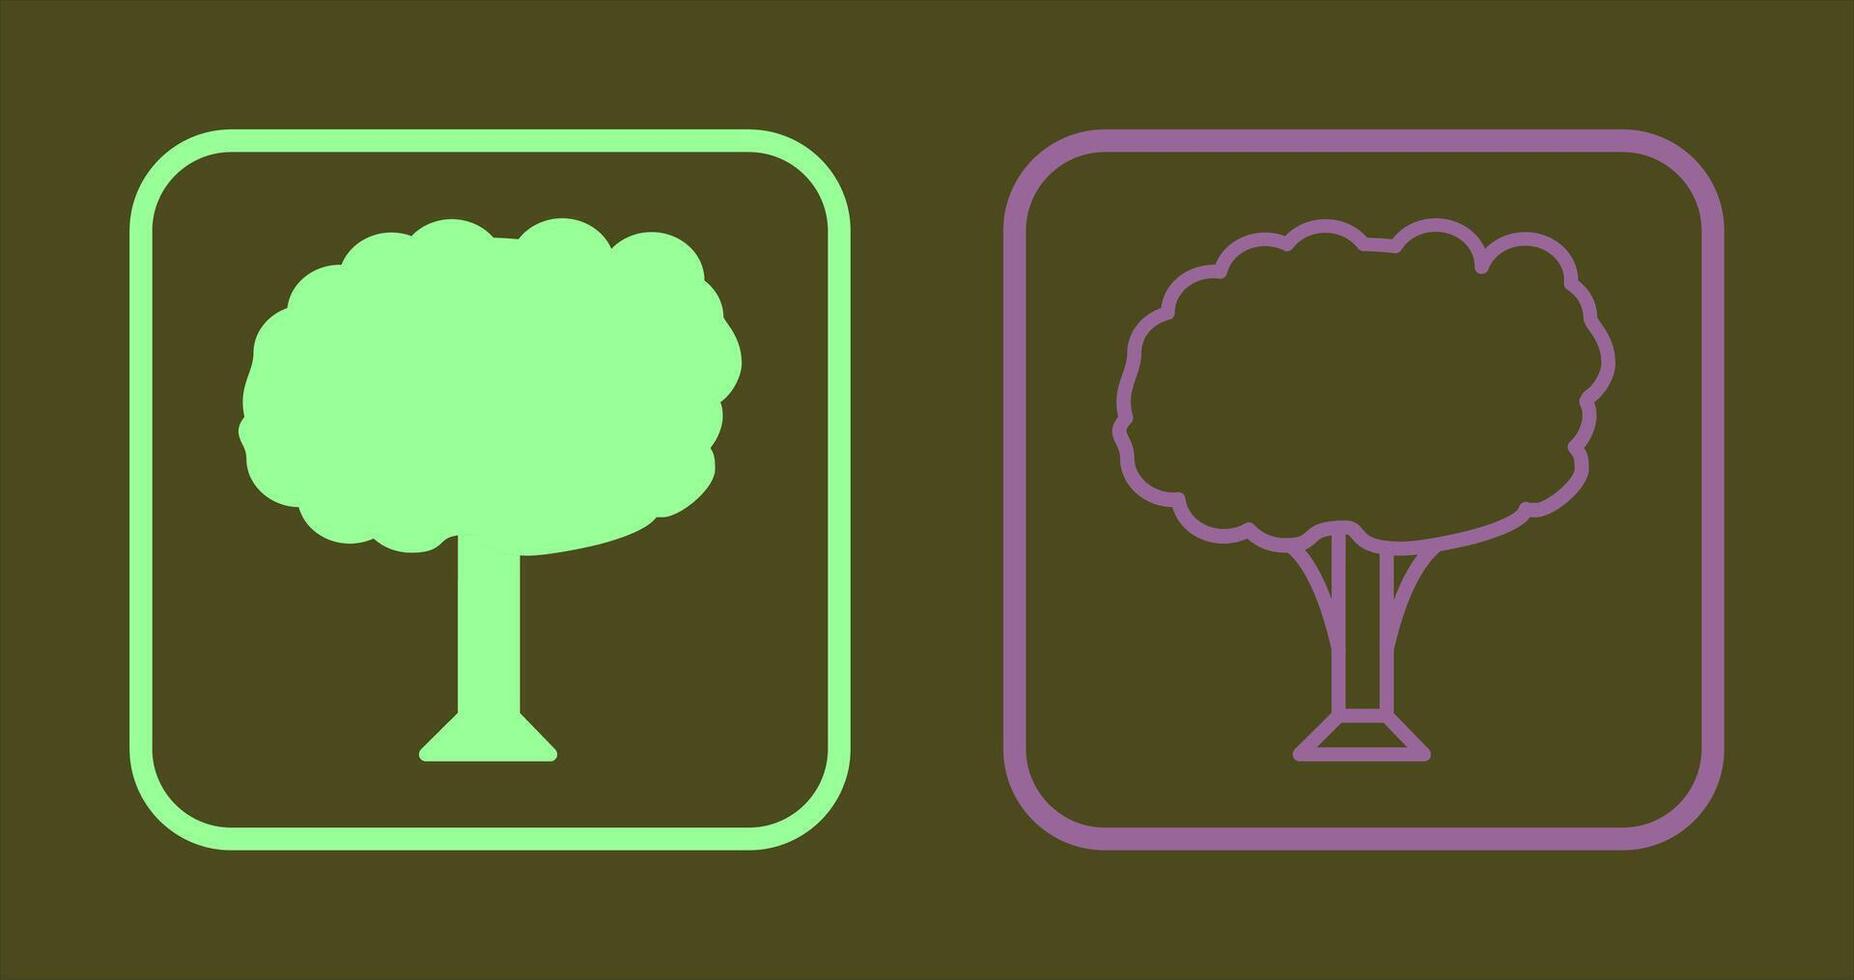 disegno dell'icona dell'albero vettore